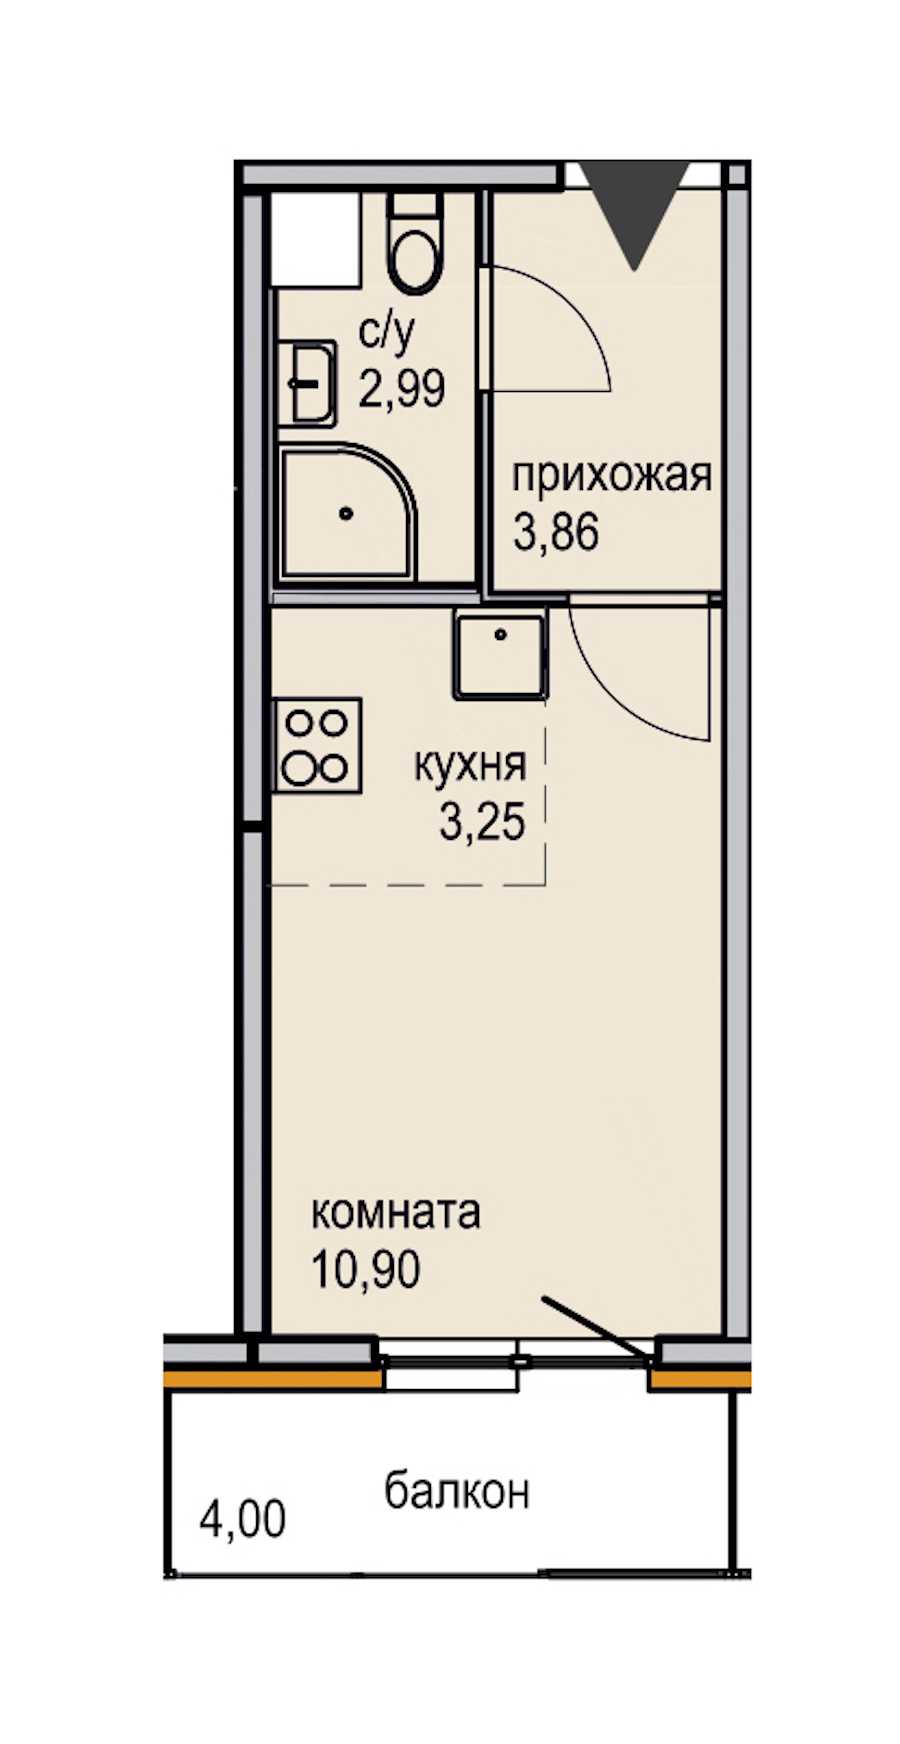 Студия в ЮИТ: площадь 21 м2 , этаж: 8 – купить в Санкт-Петербурге